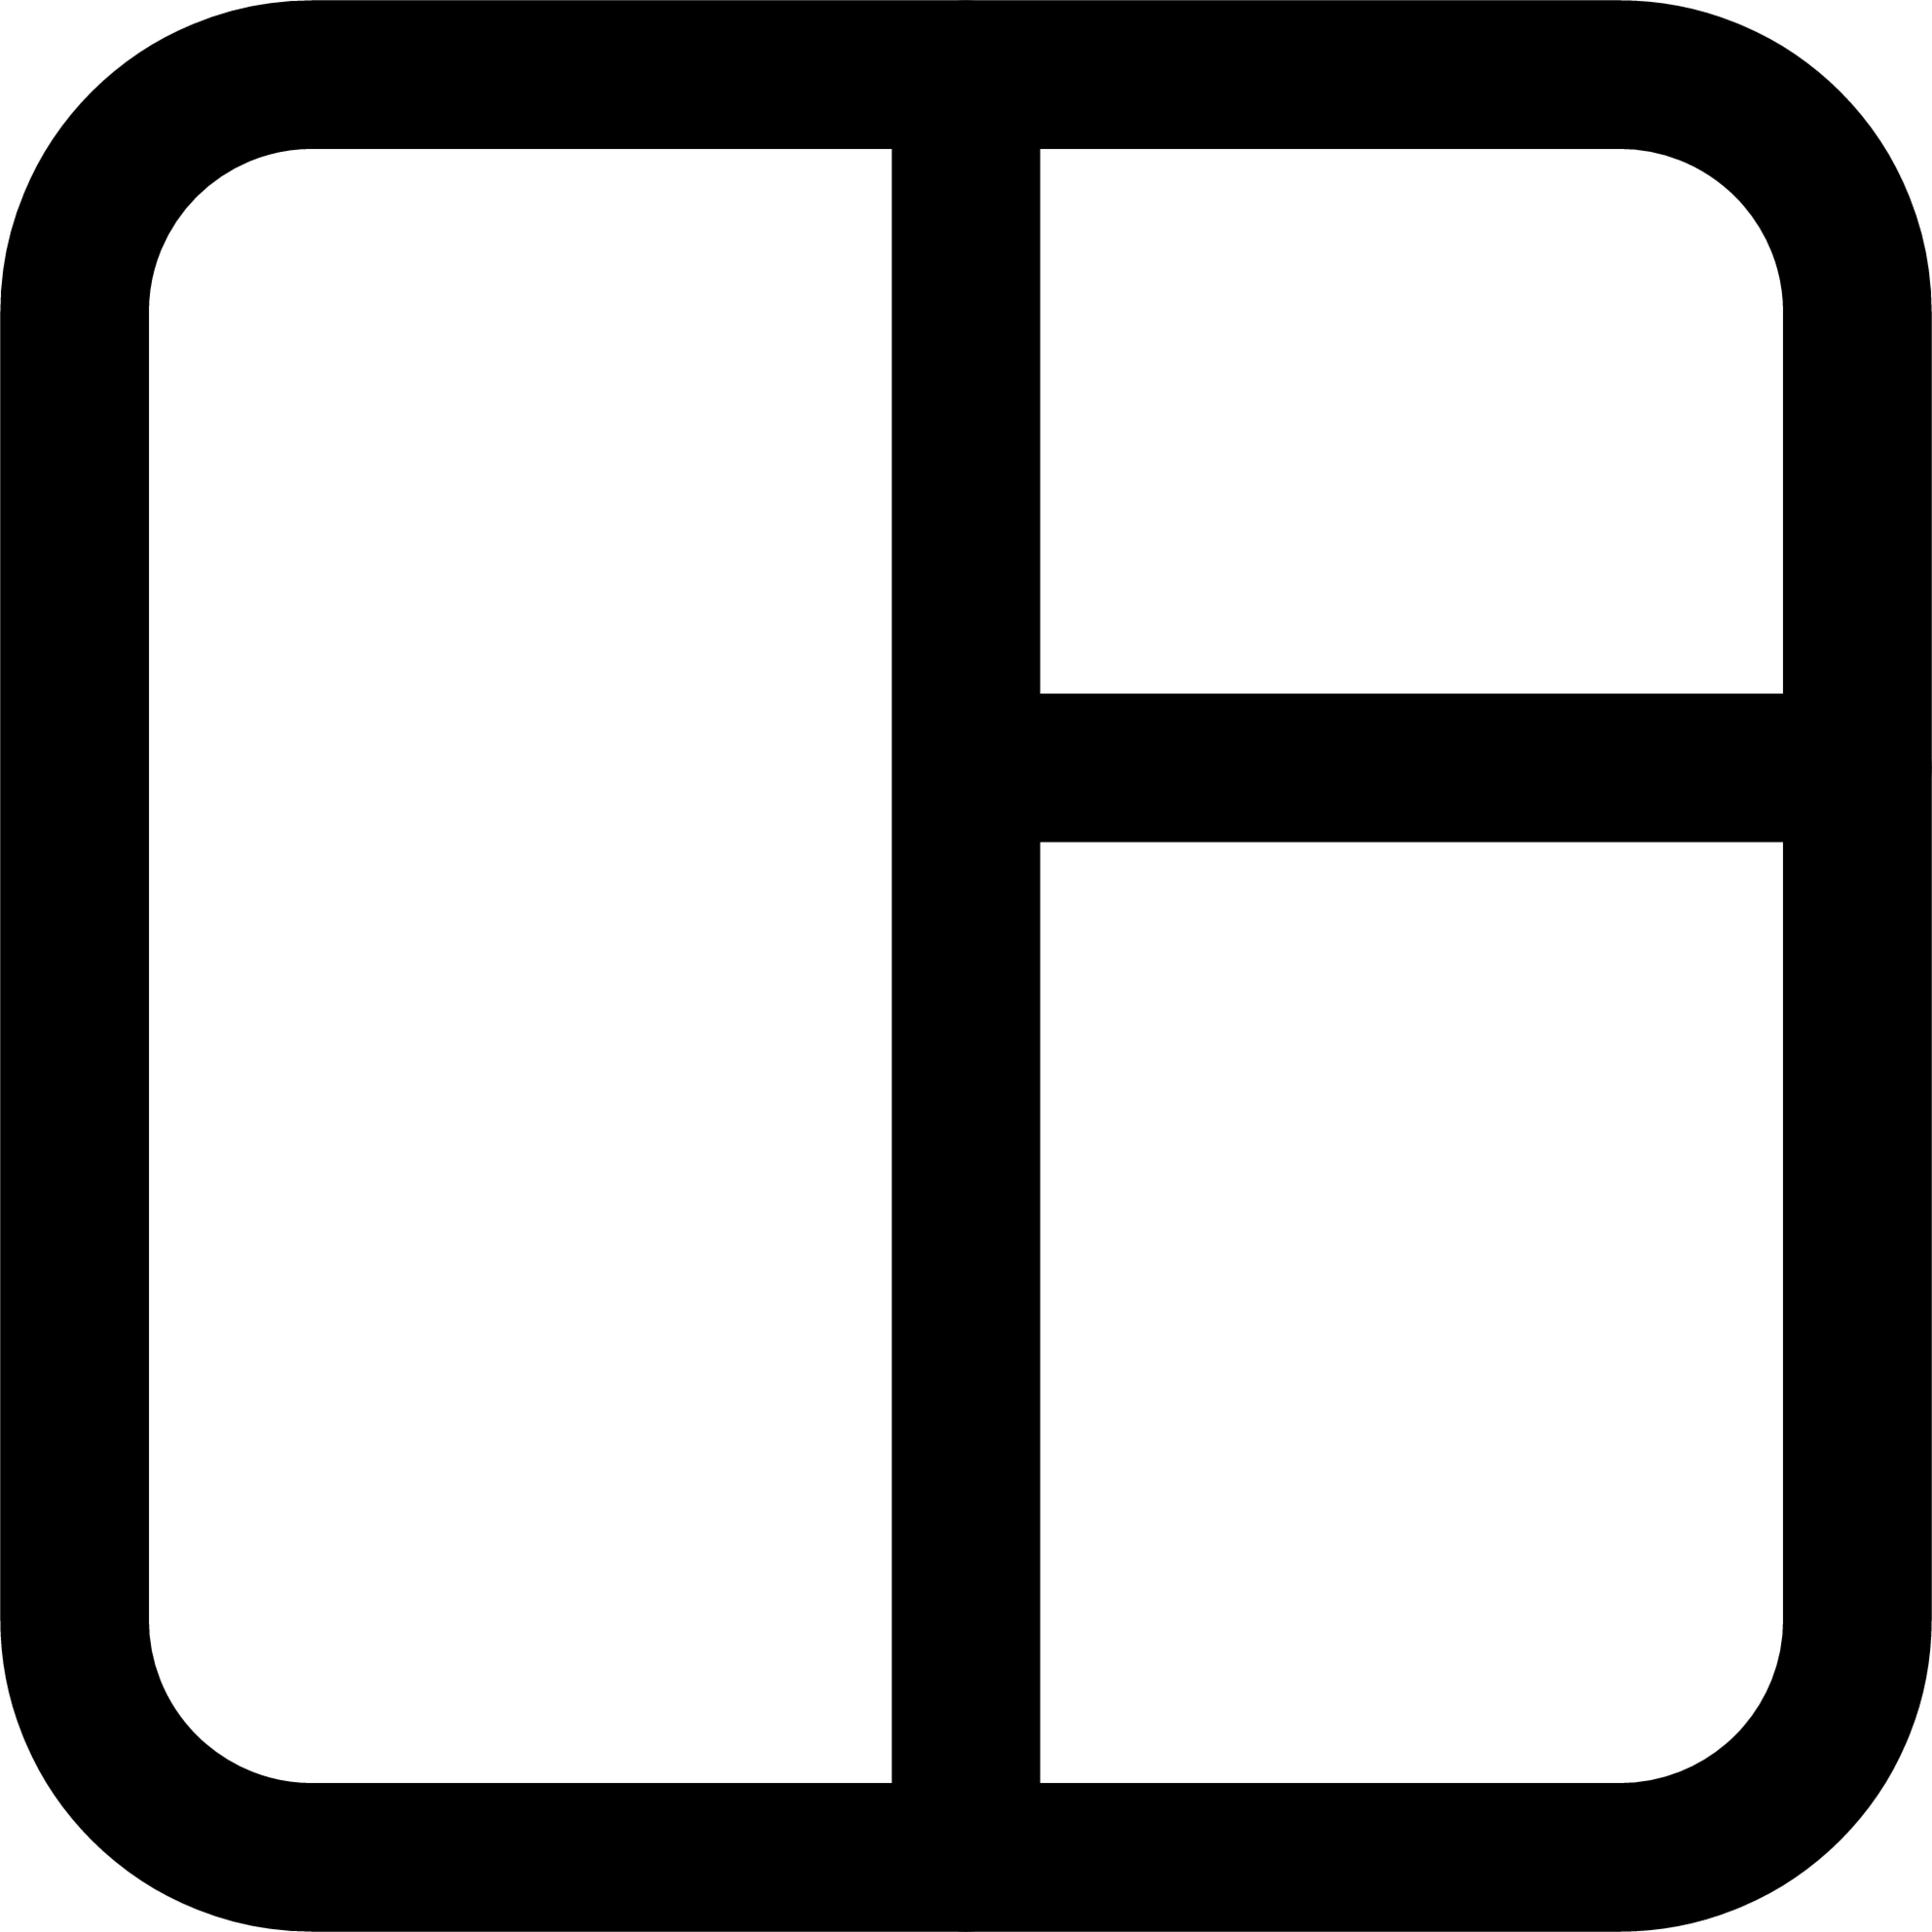 Dashboard vert (line) icon